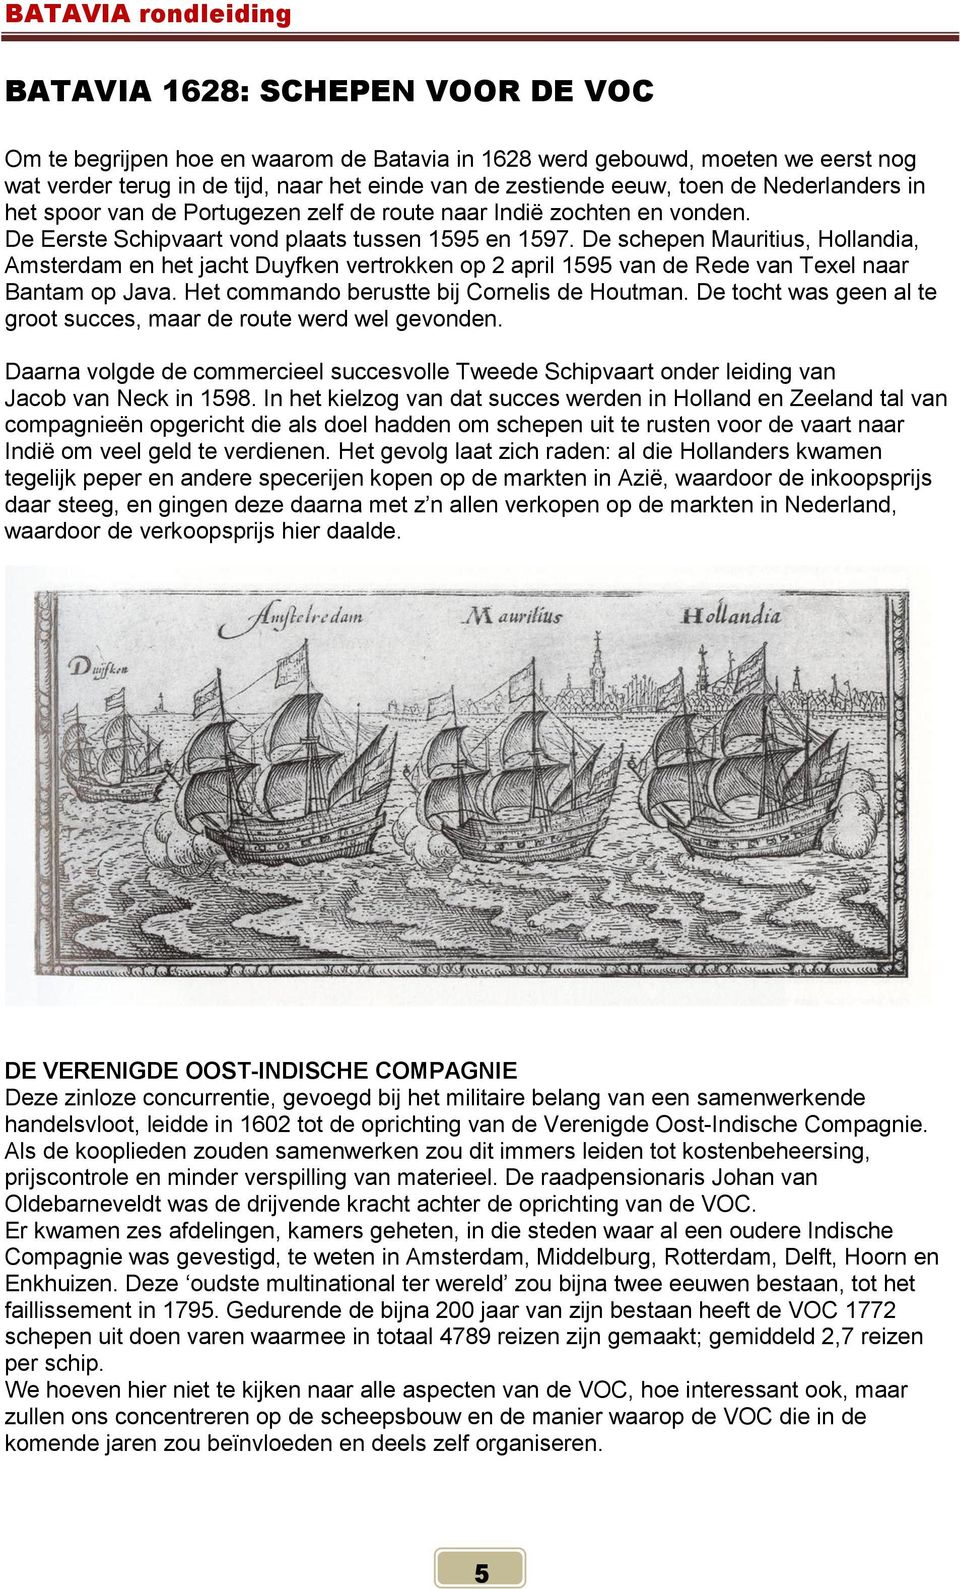 De schepen Mauritius, Hollandia, Amsterdam en het jacht Duyfken vertrokken op 2 april 1595 van de Rede van Texel naar Bantam op Java. Het commando berustte bij Cornelis de Houtman.